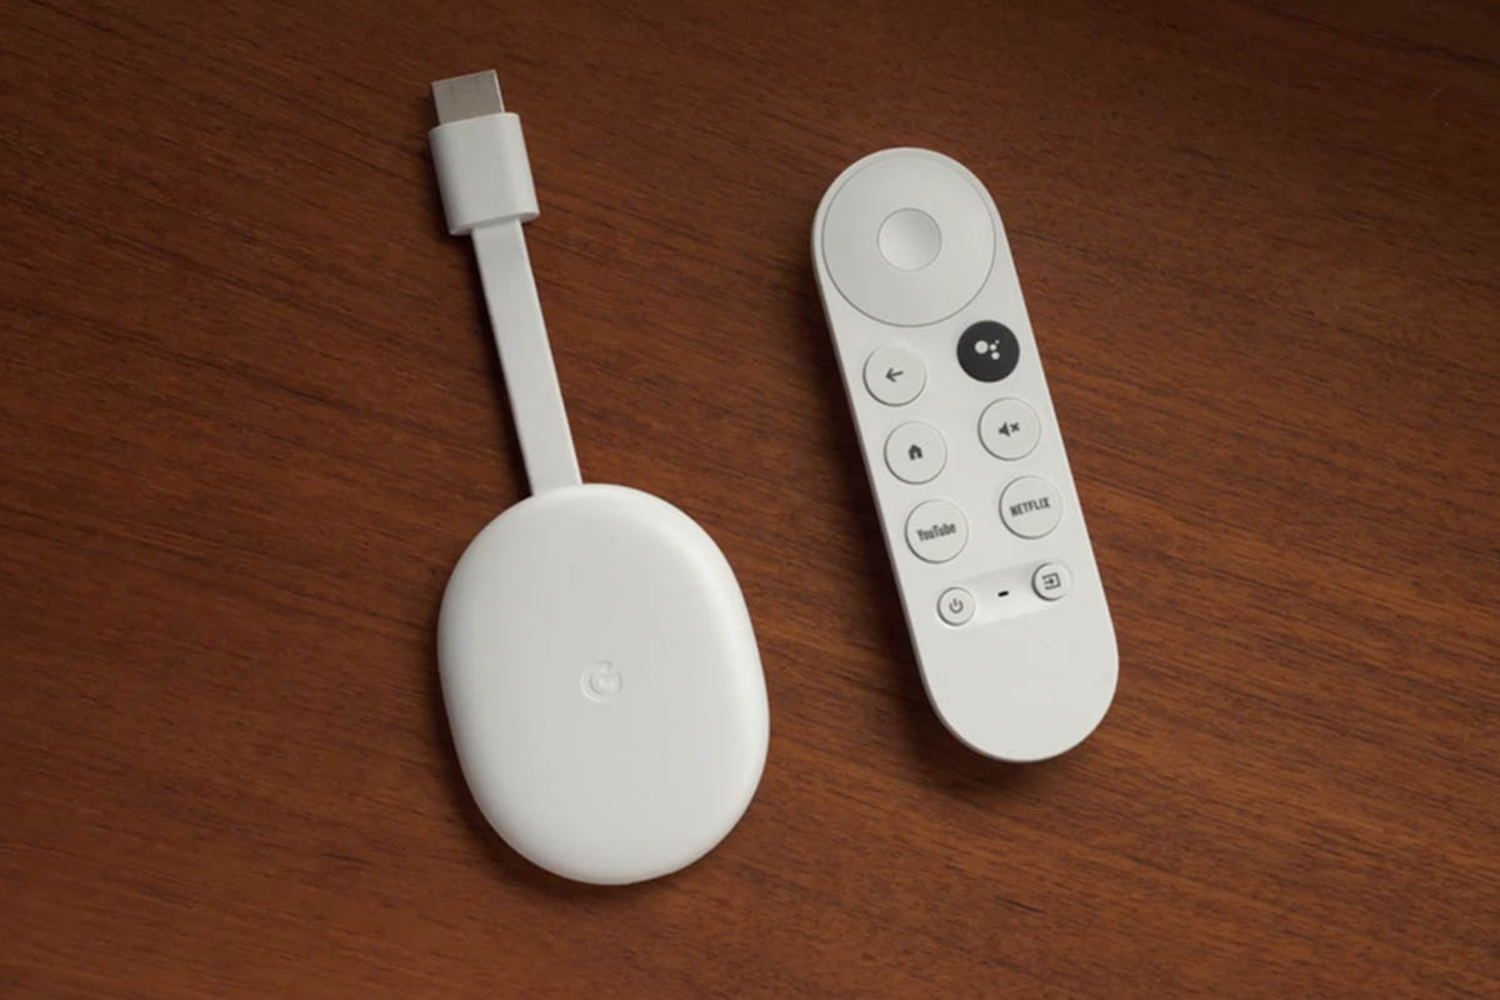 Um Chromecast branco e um controle remoto estão sobre a mesa.